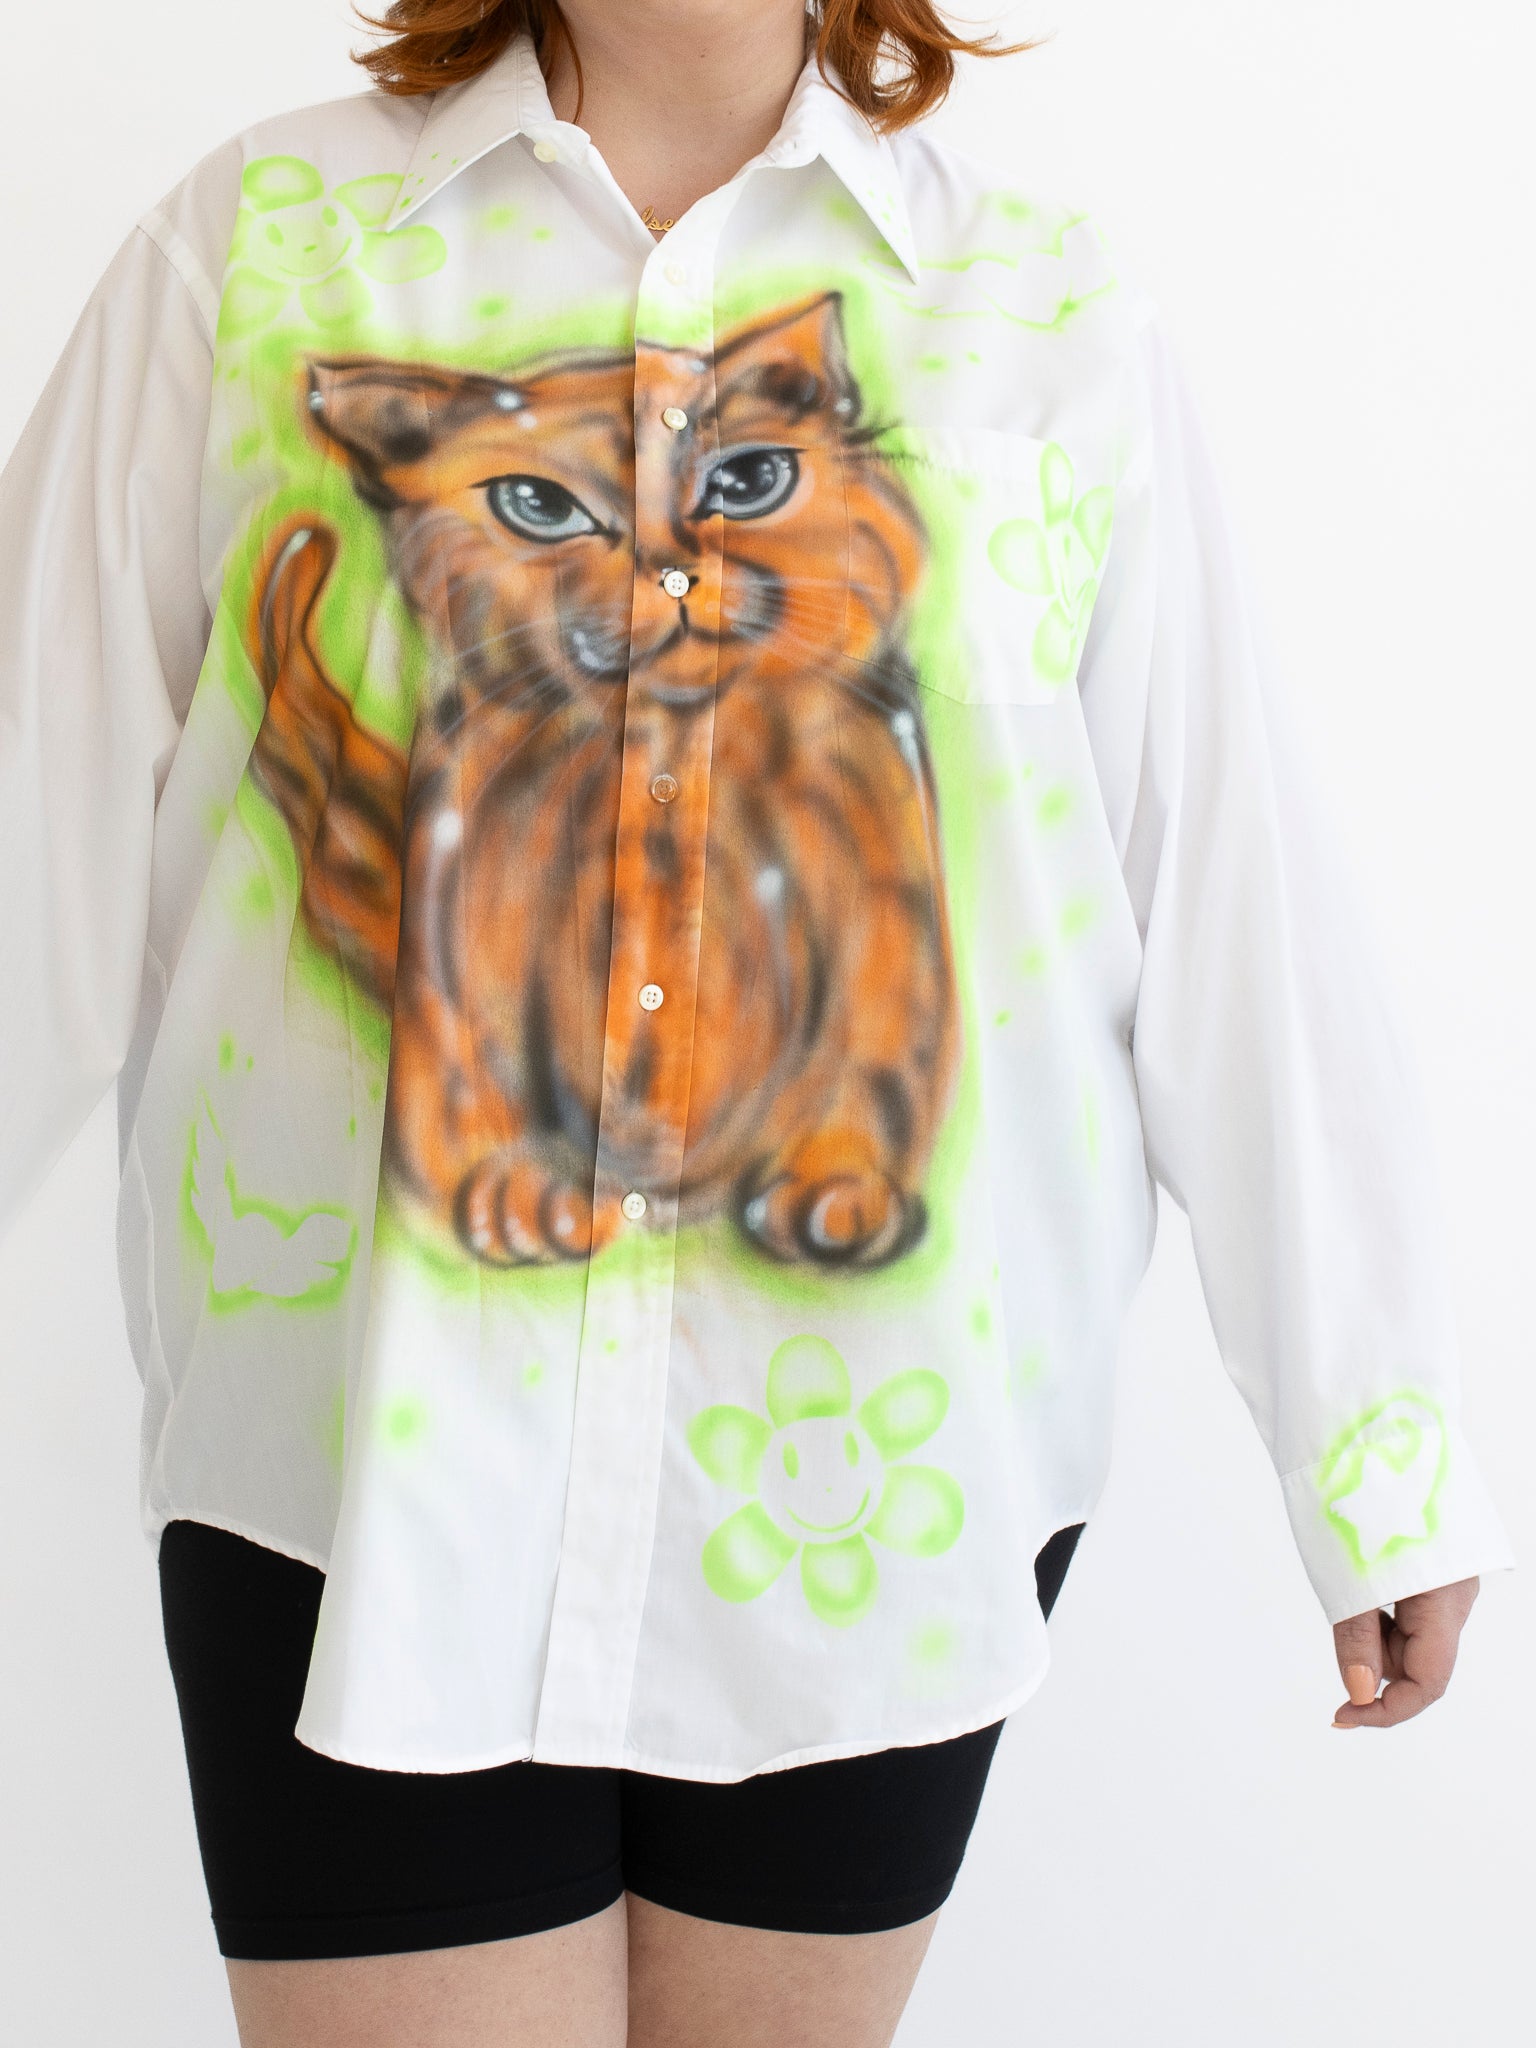 Femlord x BRZ - Not Garfield Shirt (3X)